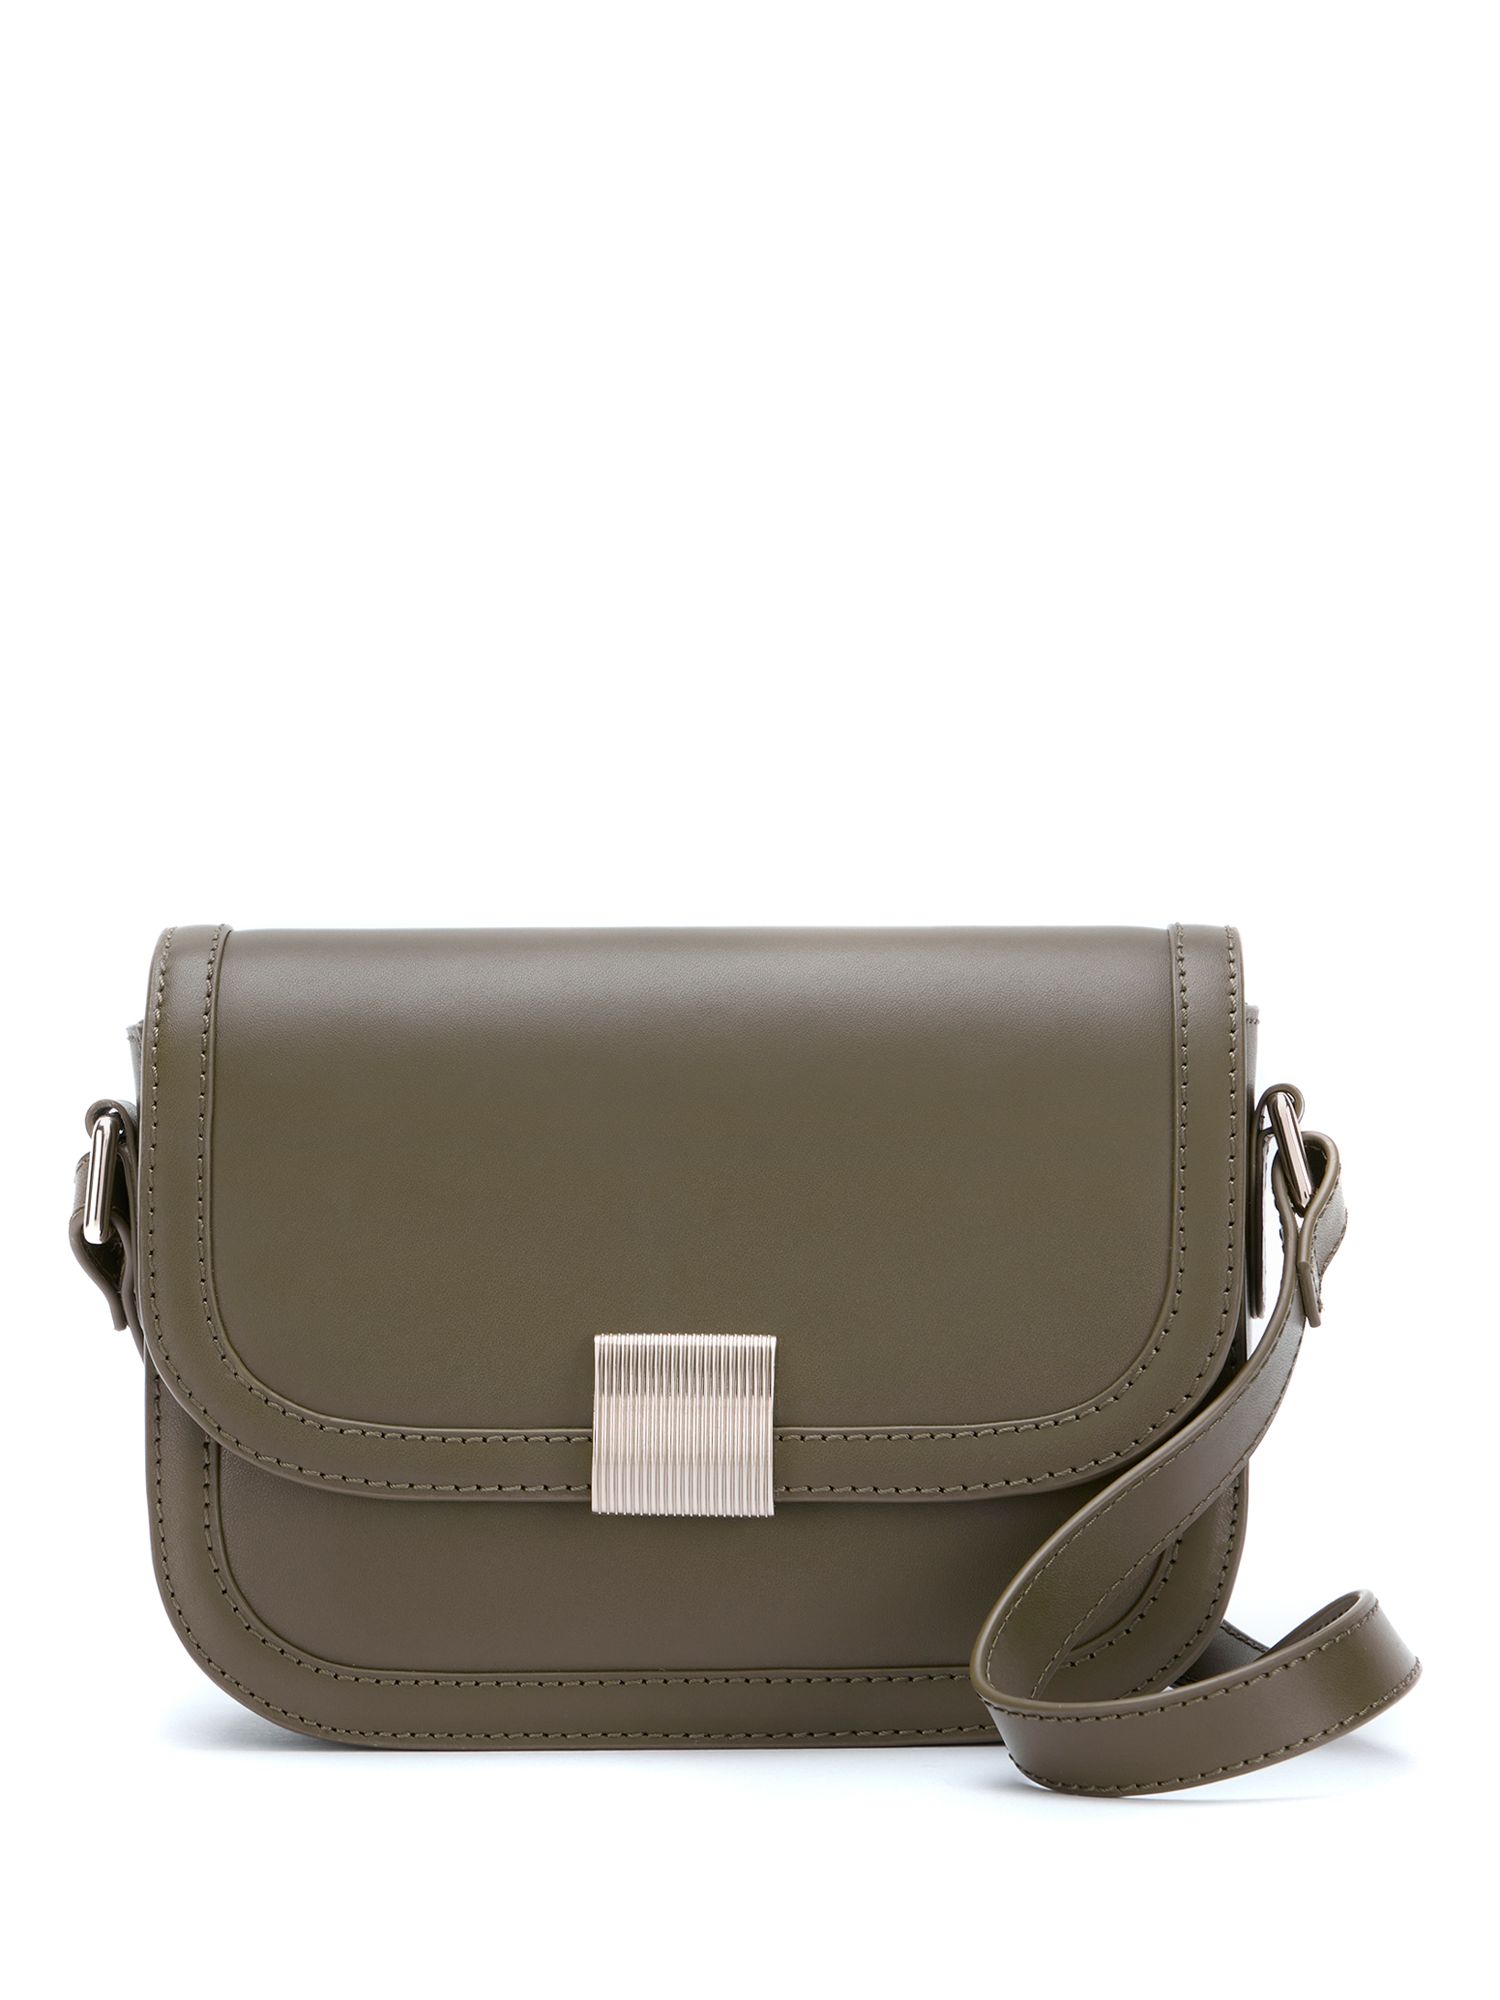 Mint Velvet Leather Boxy Crossbody Bag, Khaki, One Size